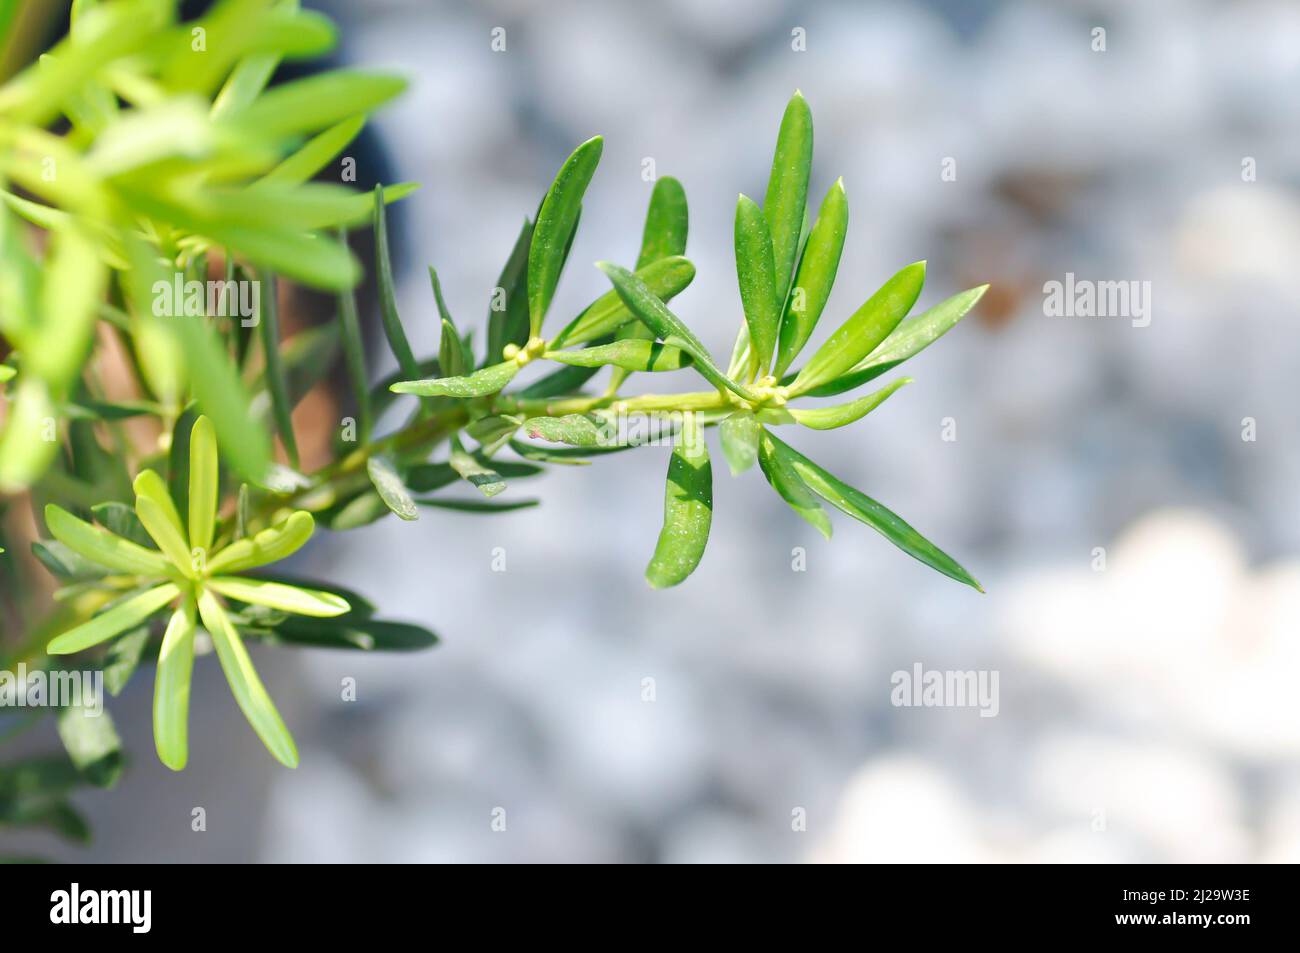 Podocarpus polystachyus, Sea Teak or Jati Laut or PODOCARPACEAE plant Stock Photo